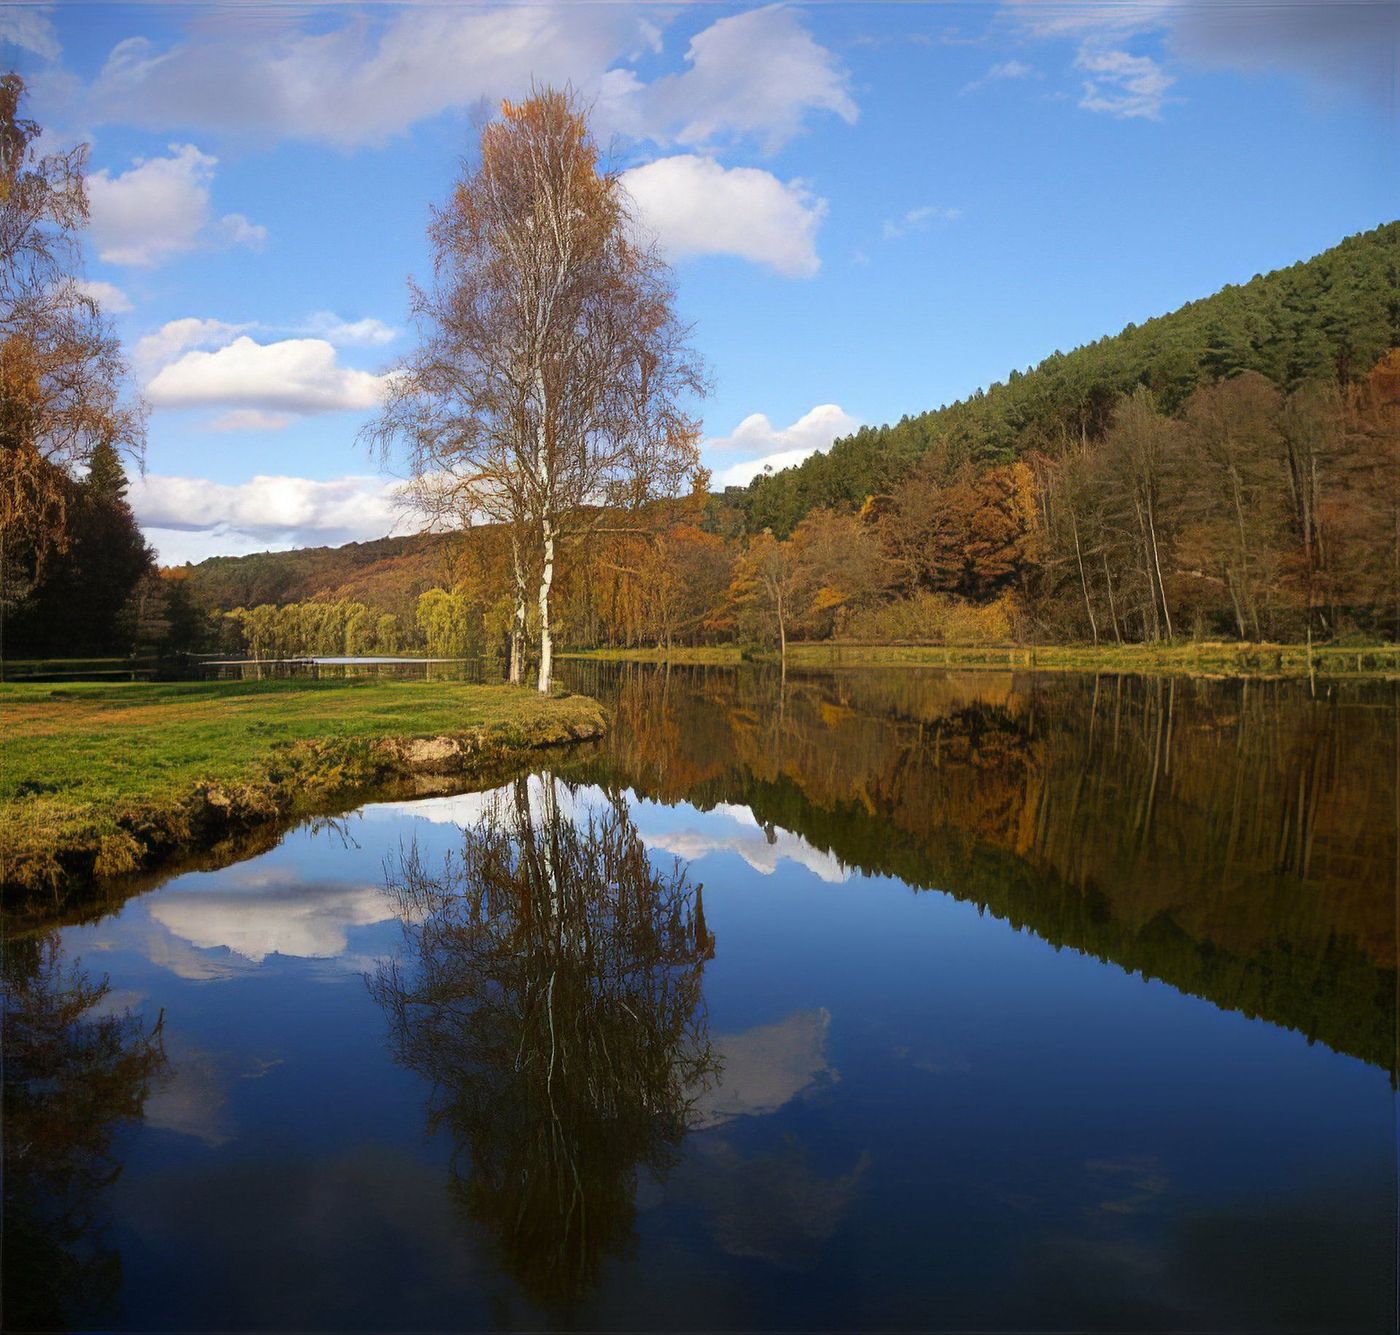 Parc naturel régional des Vosges du Nord